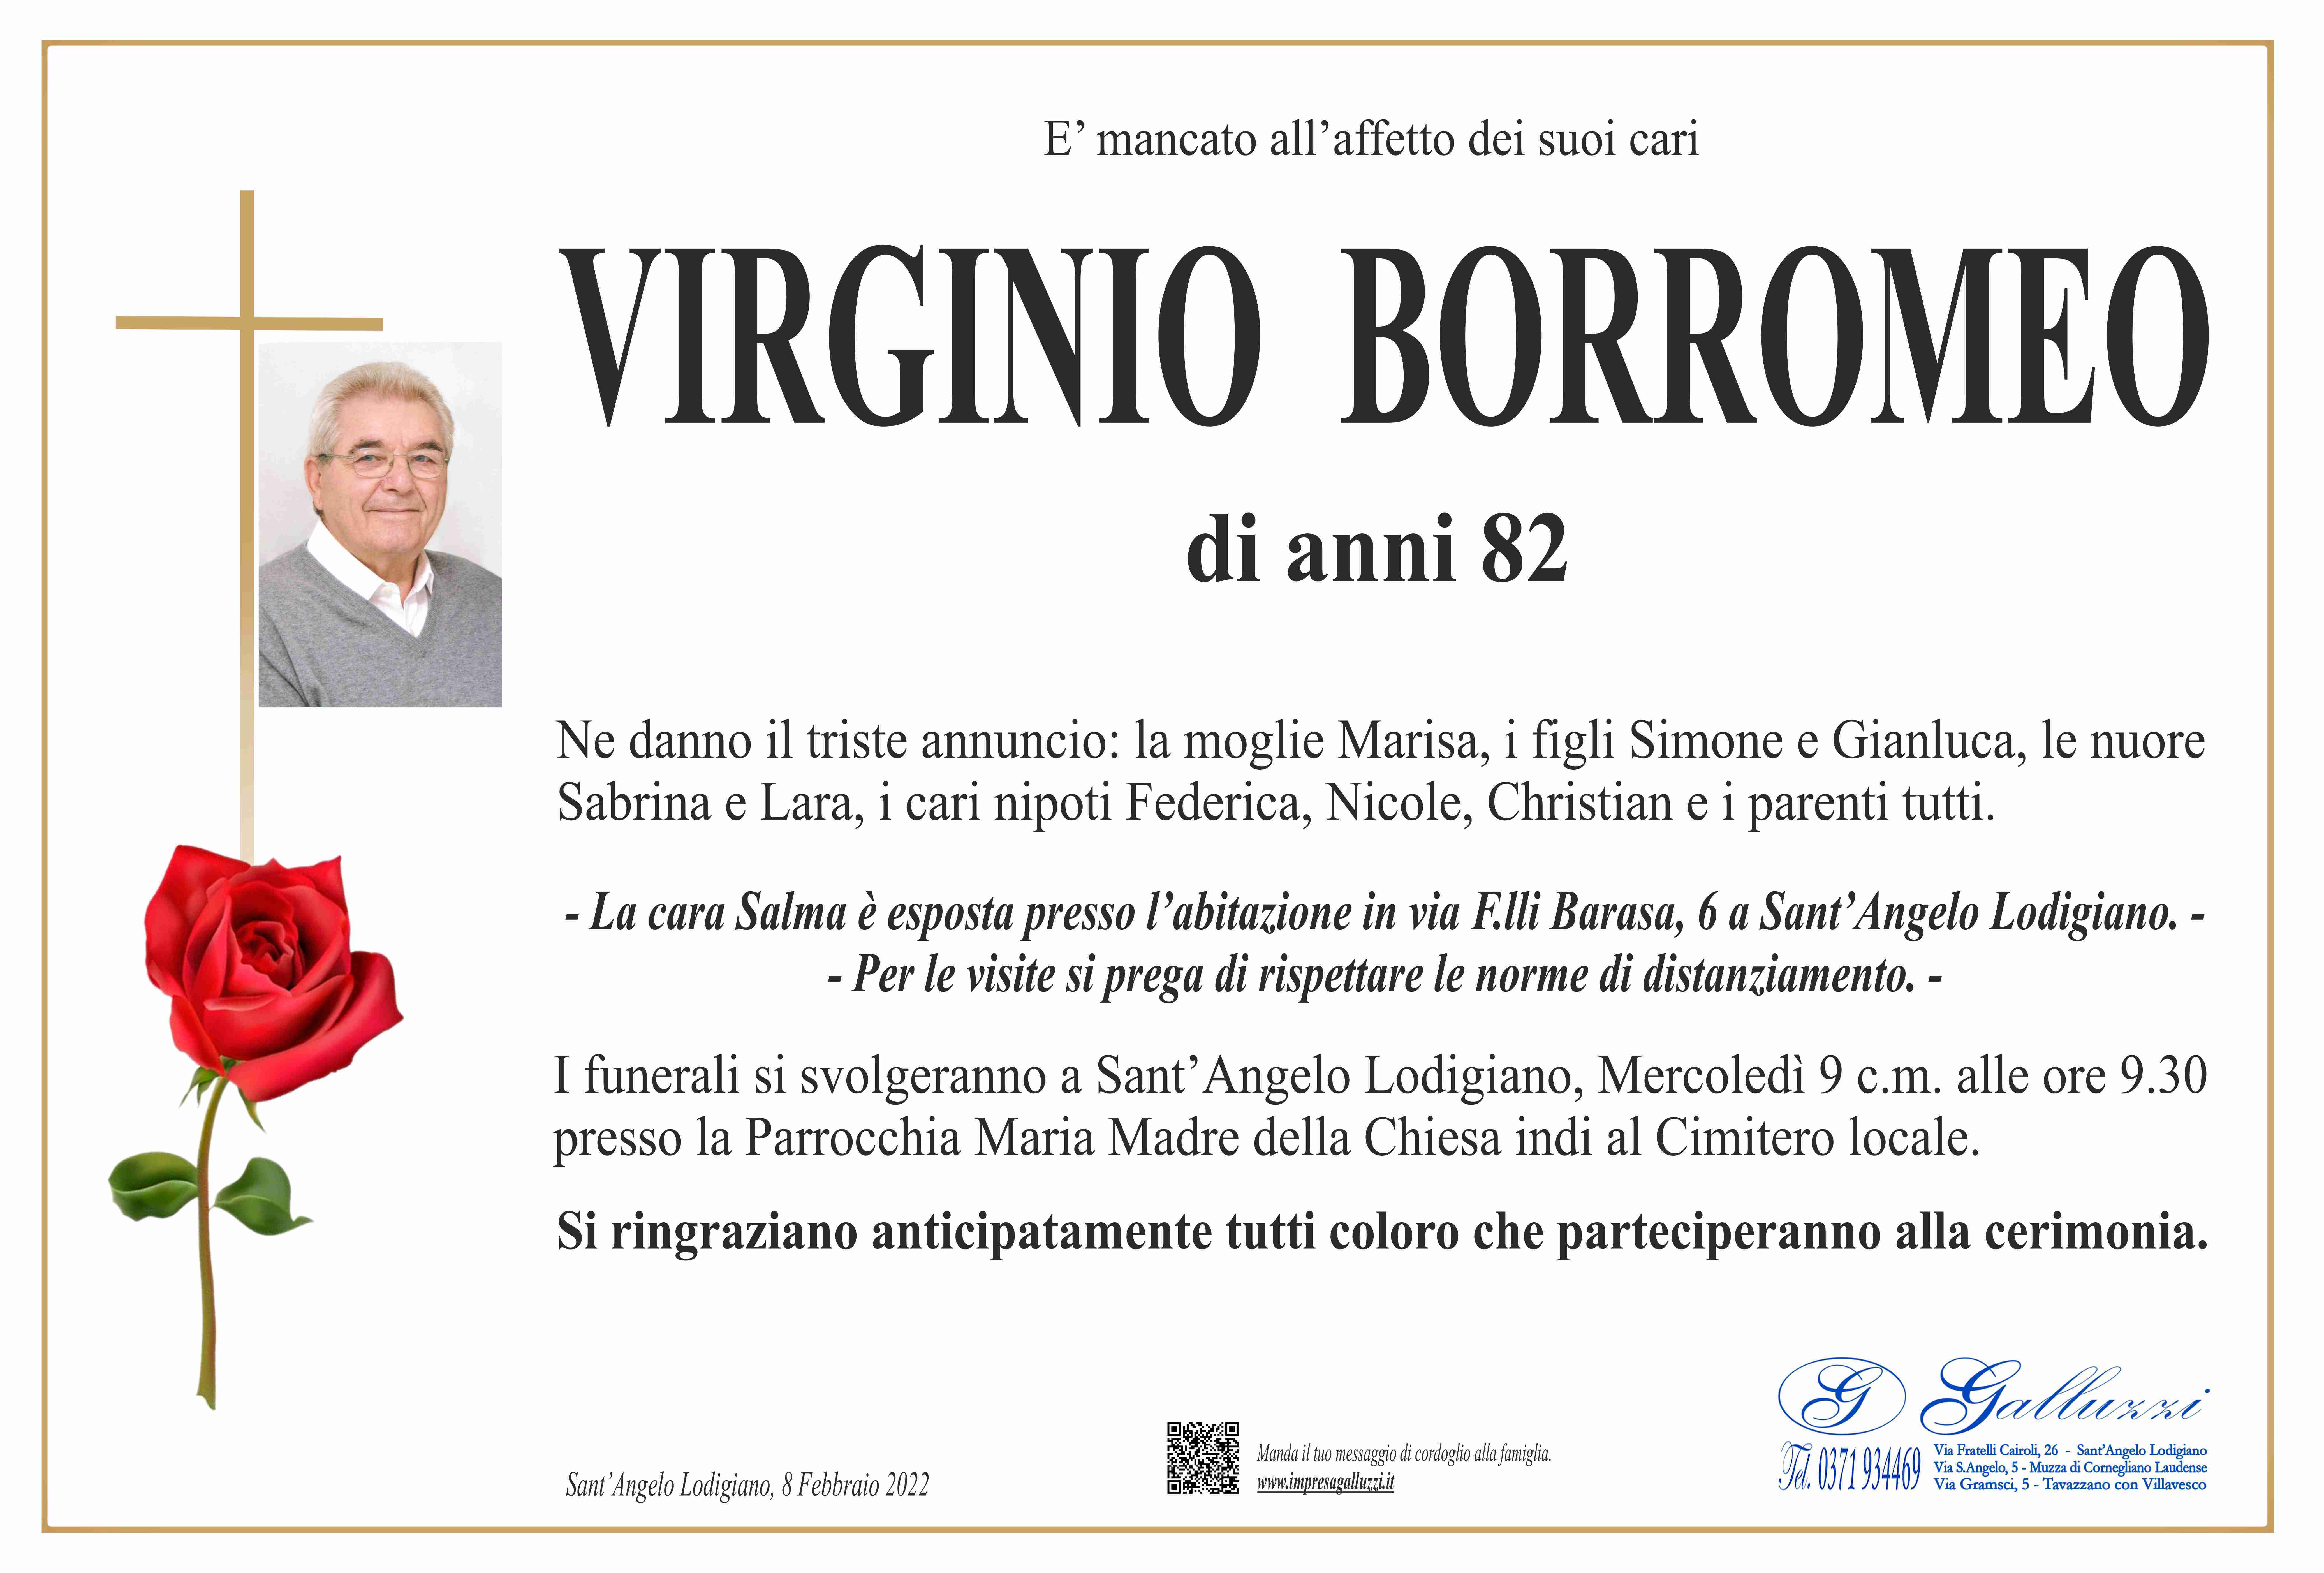 Virginio Borromeo